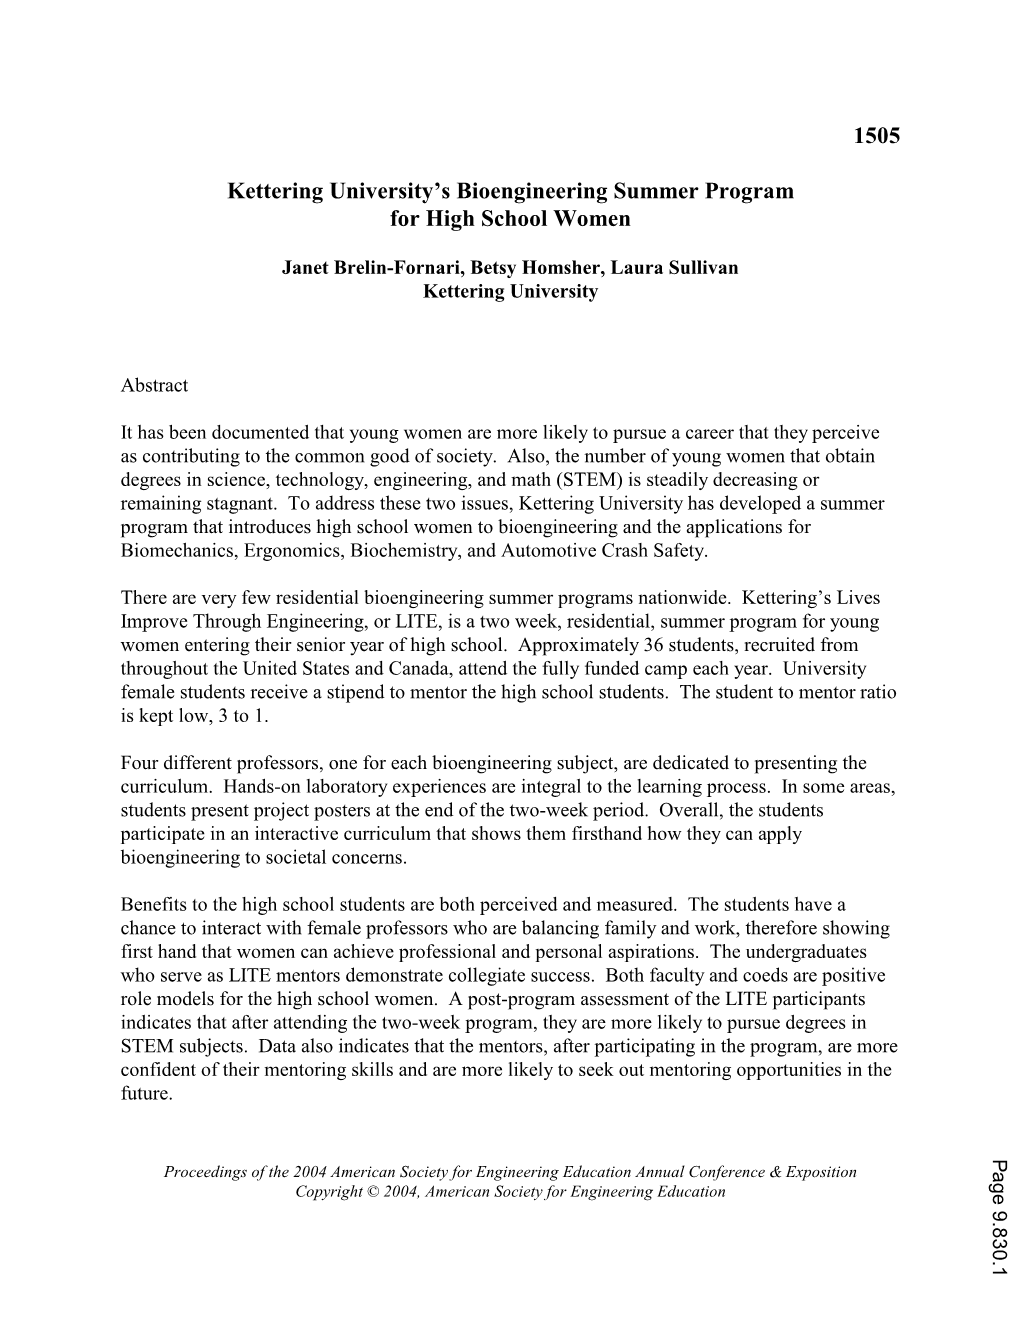 Kettering University's Summer Bioengineering Program for High